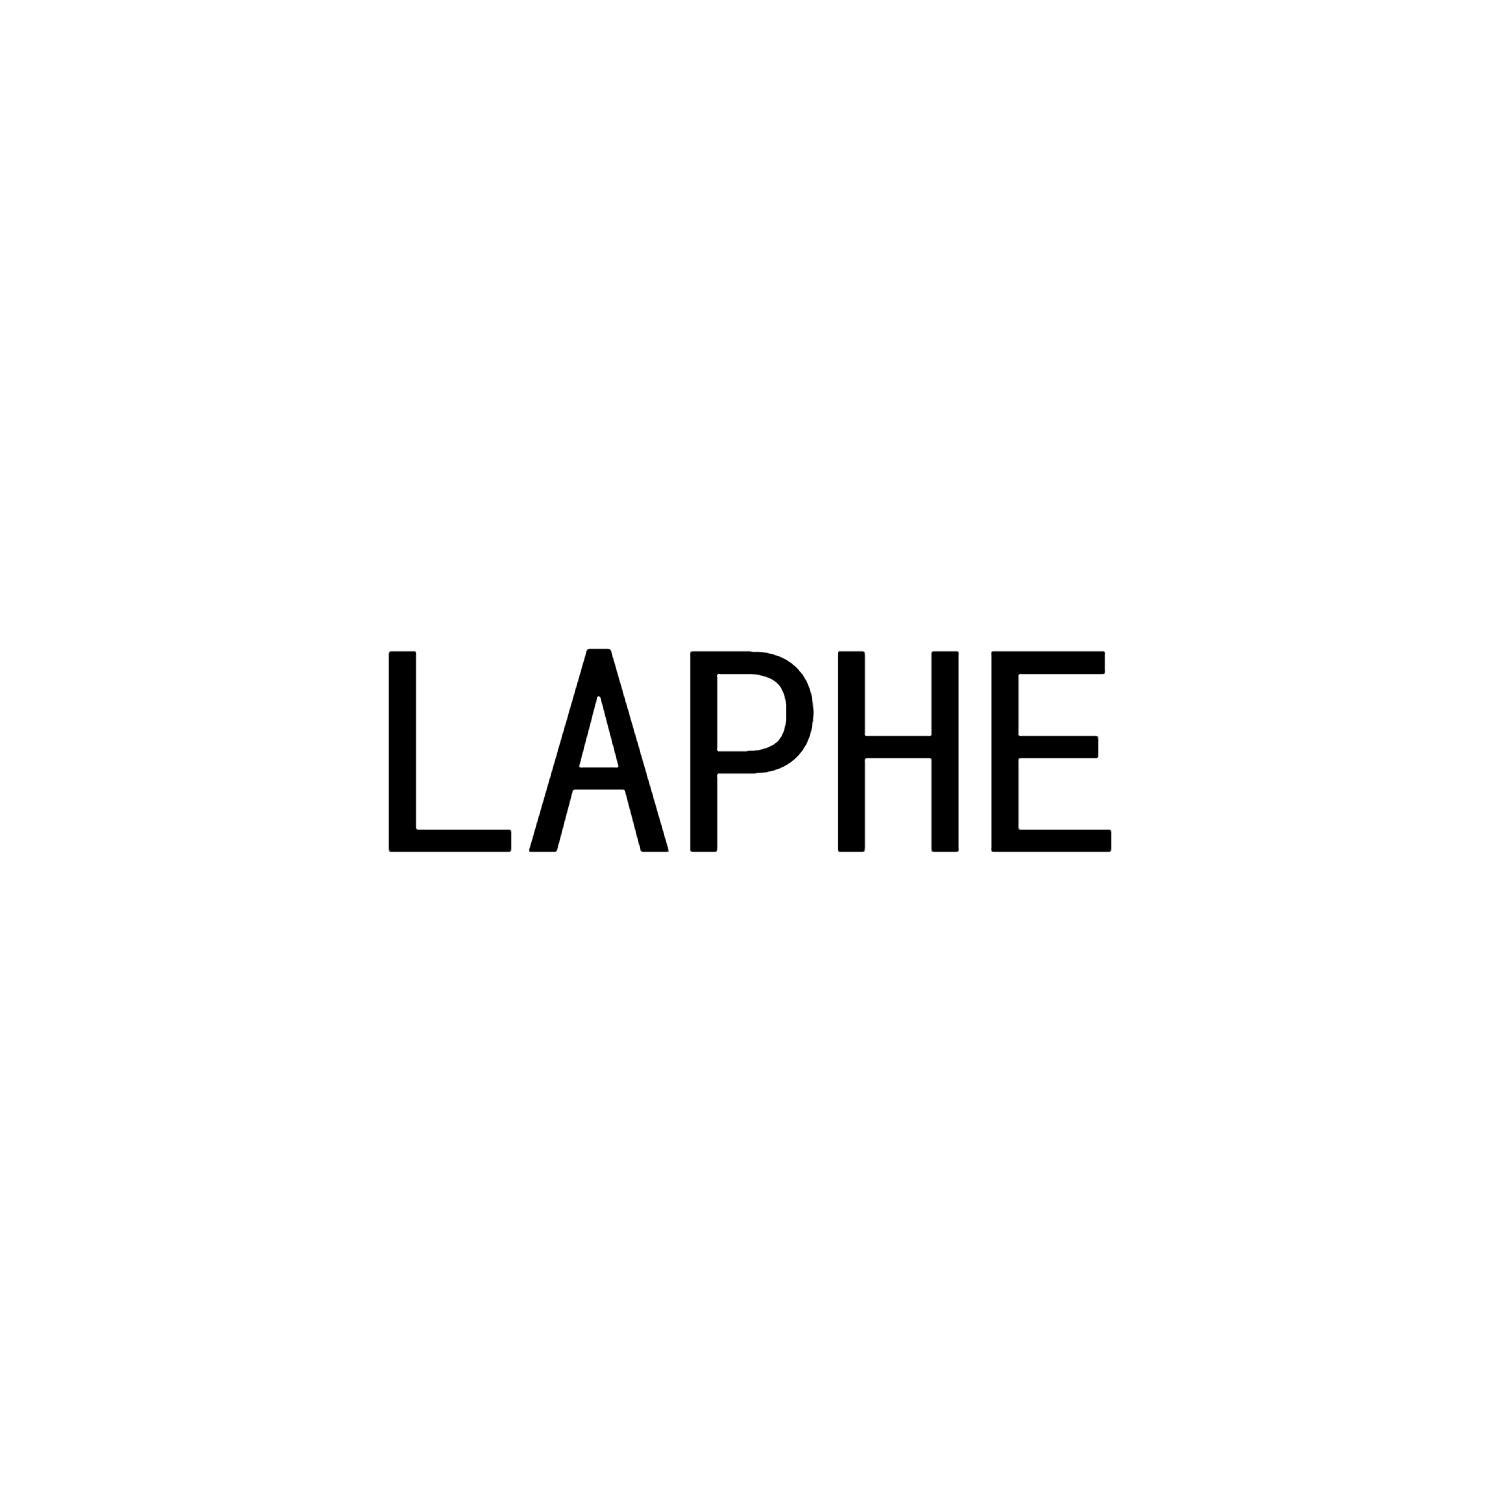 LAPHE